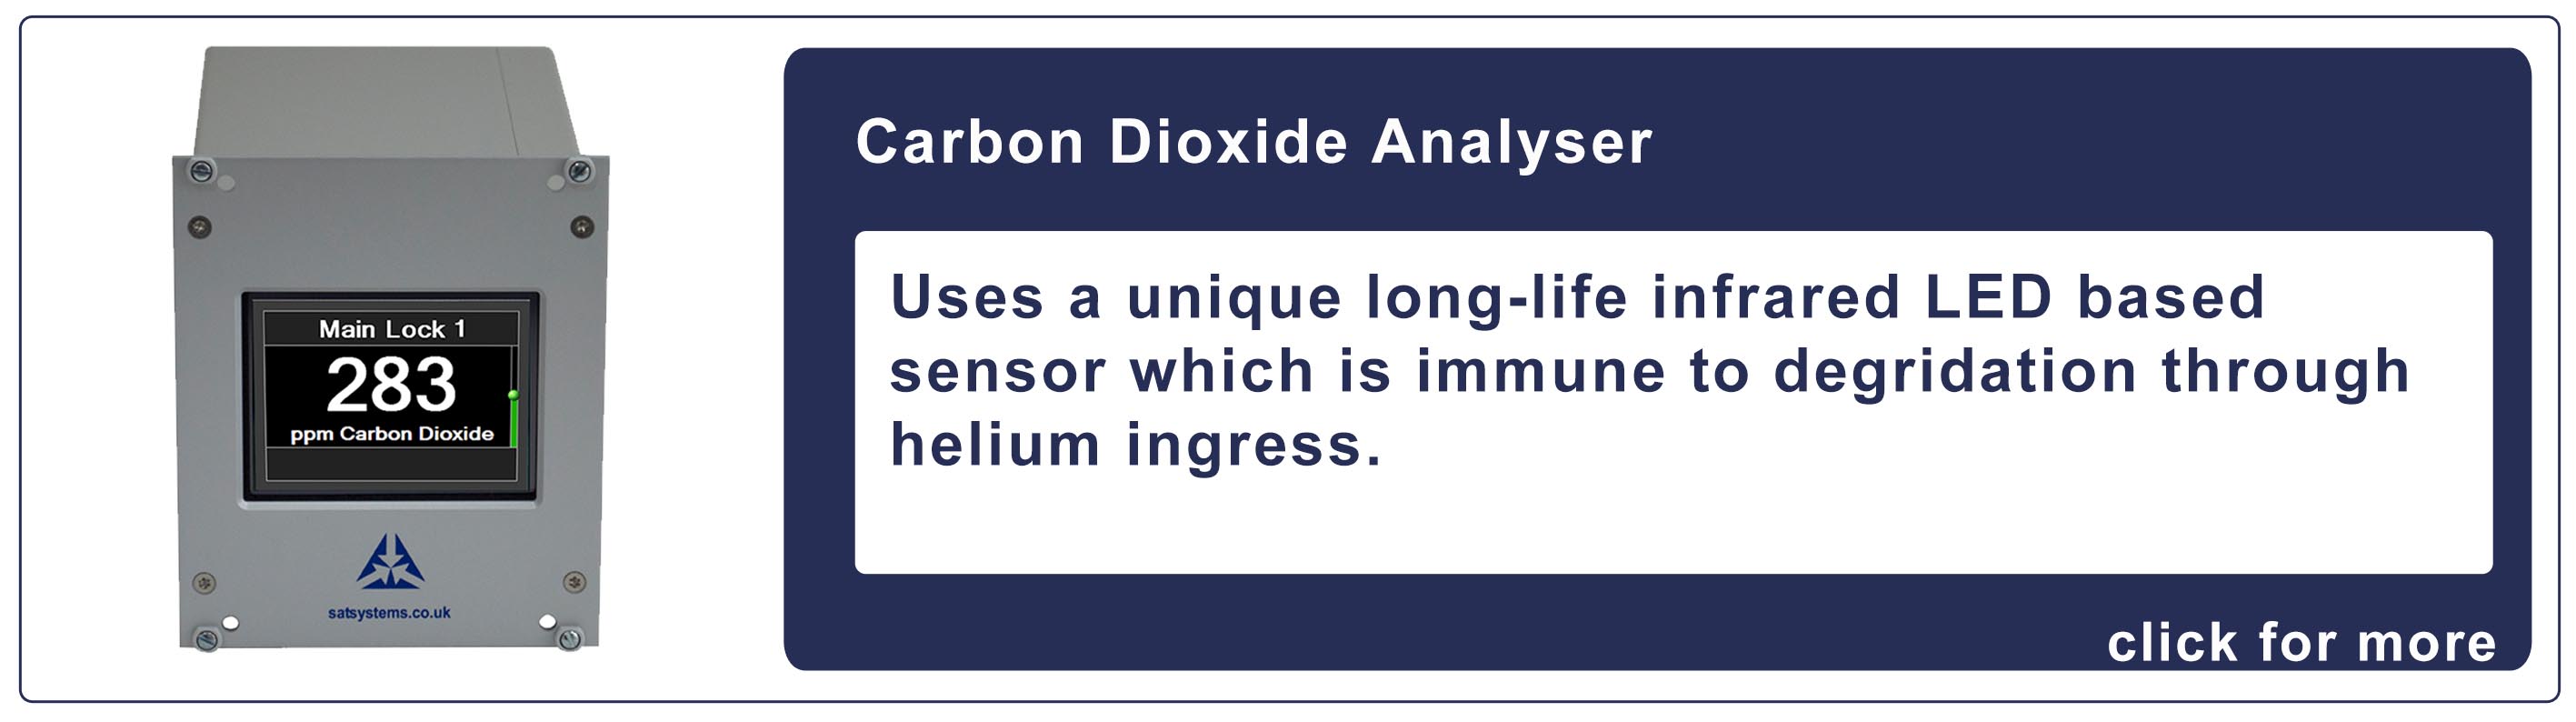 carbon-dioxide-analyser-slide